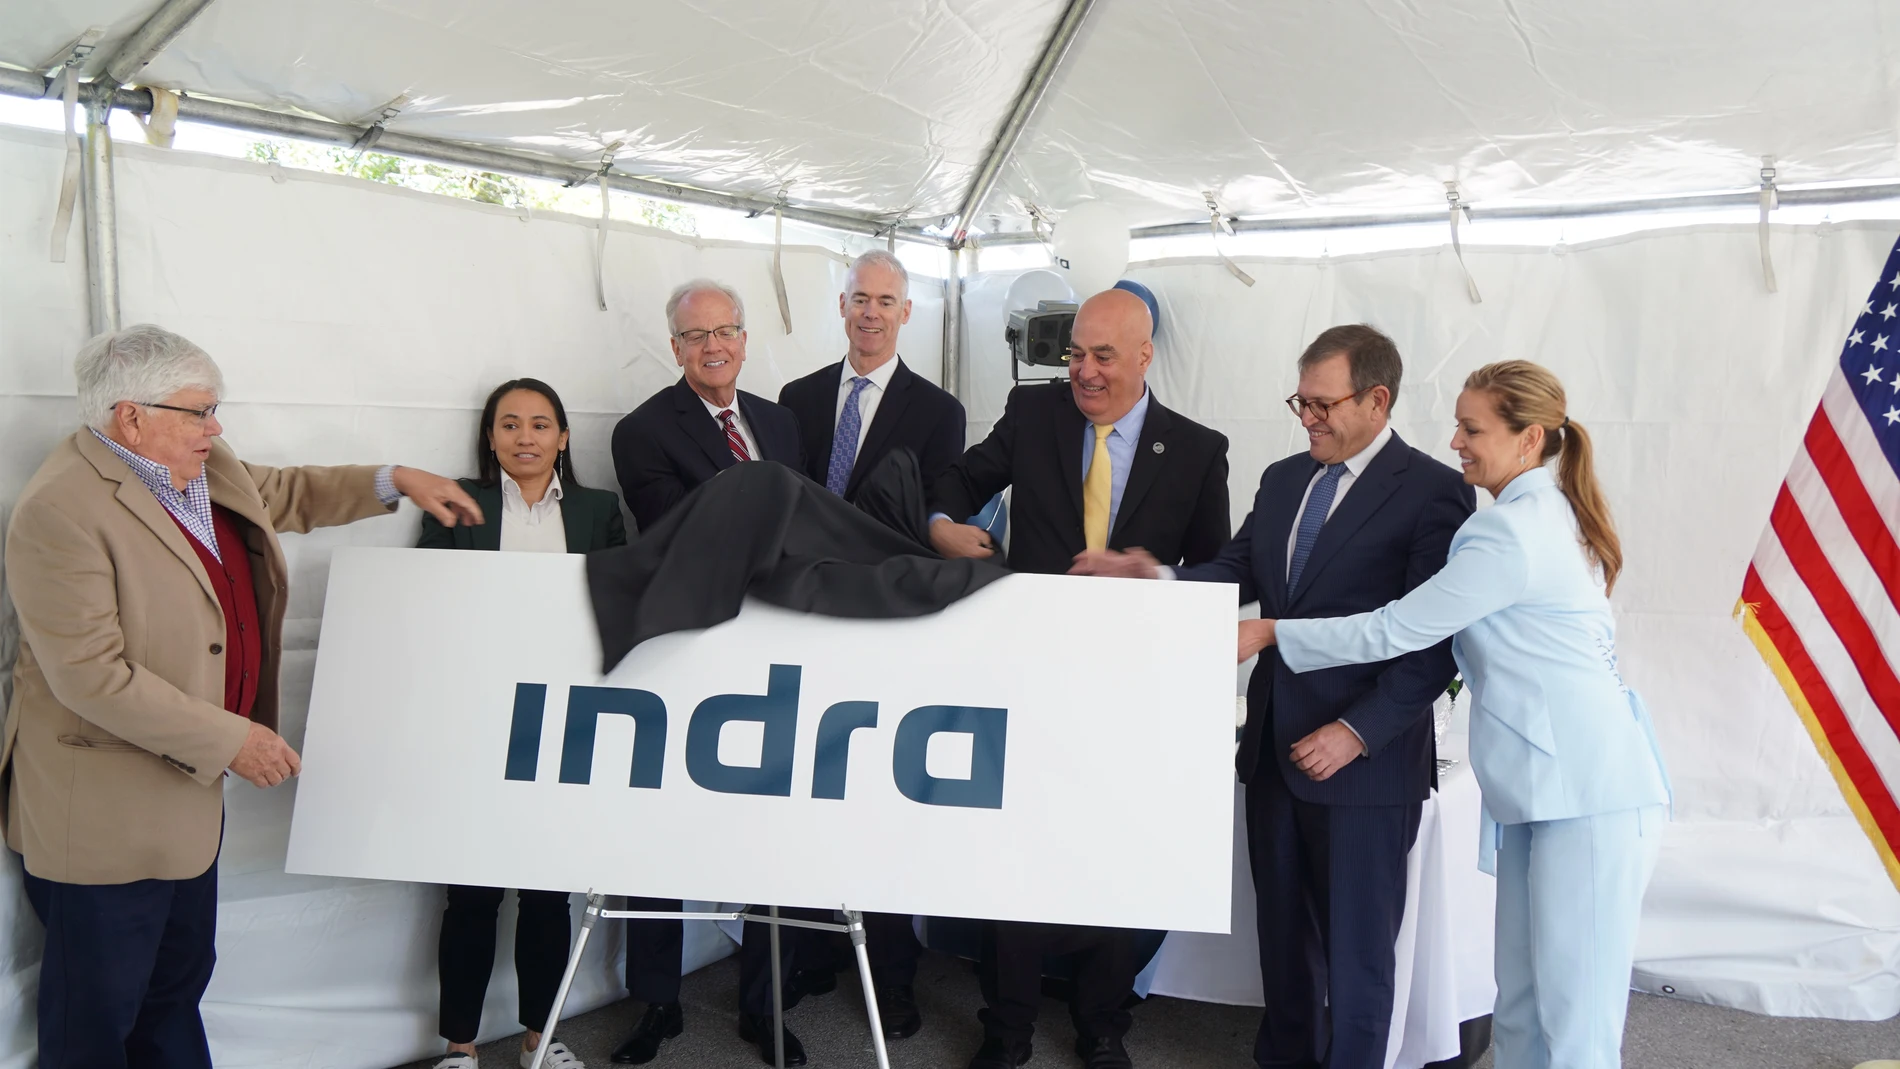 Indra hace oficial el lanzamiento de su filial estadounidense